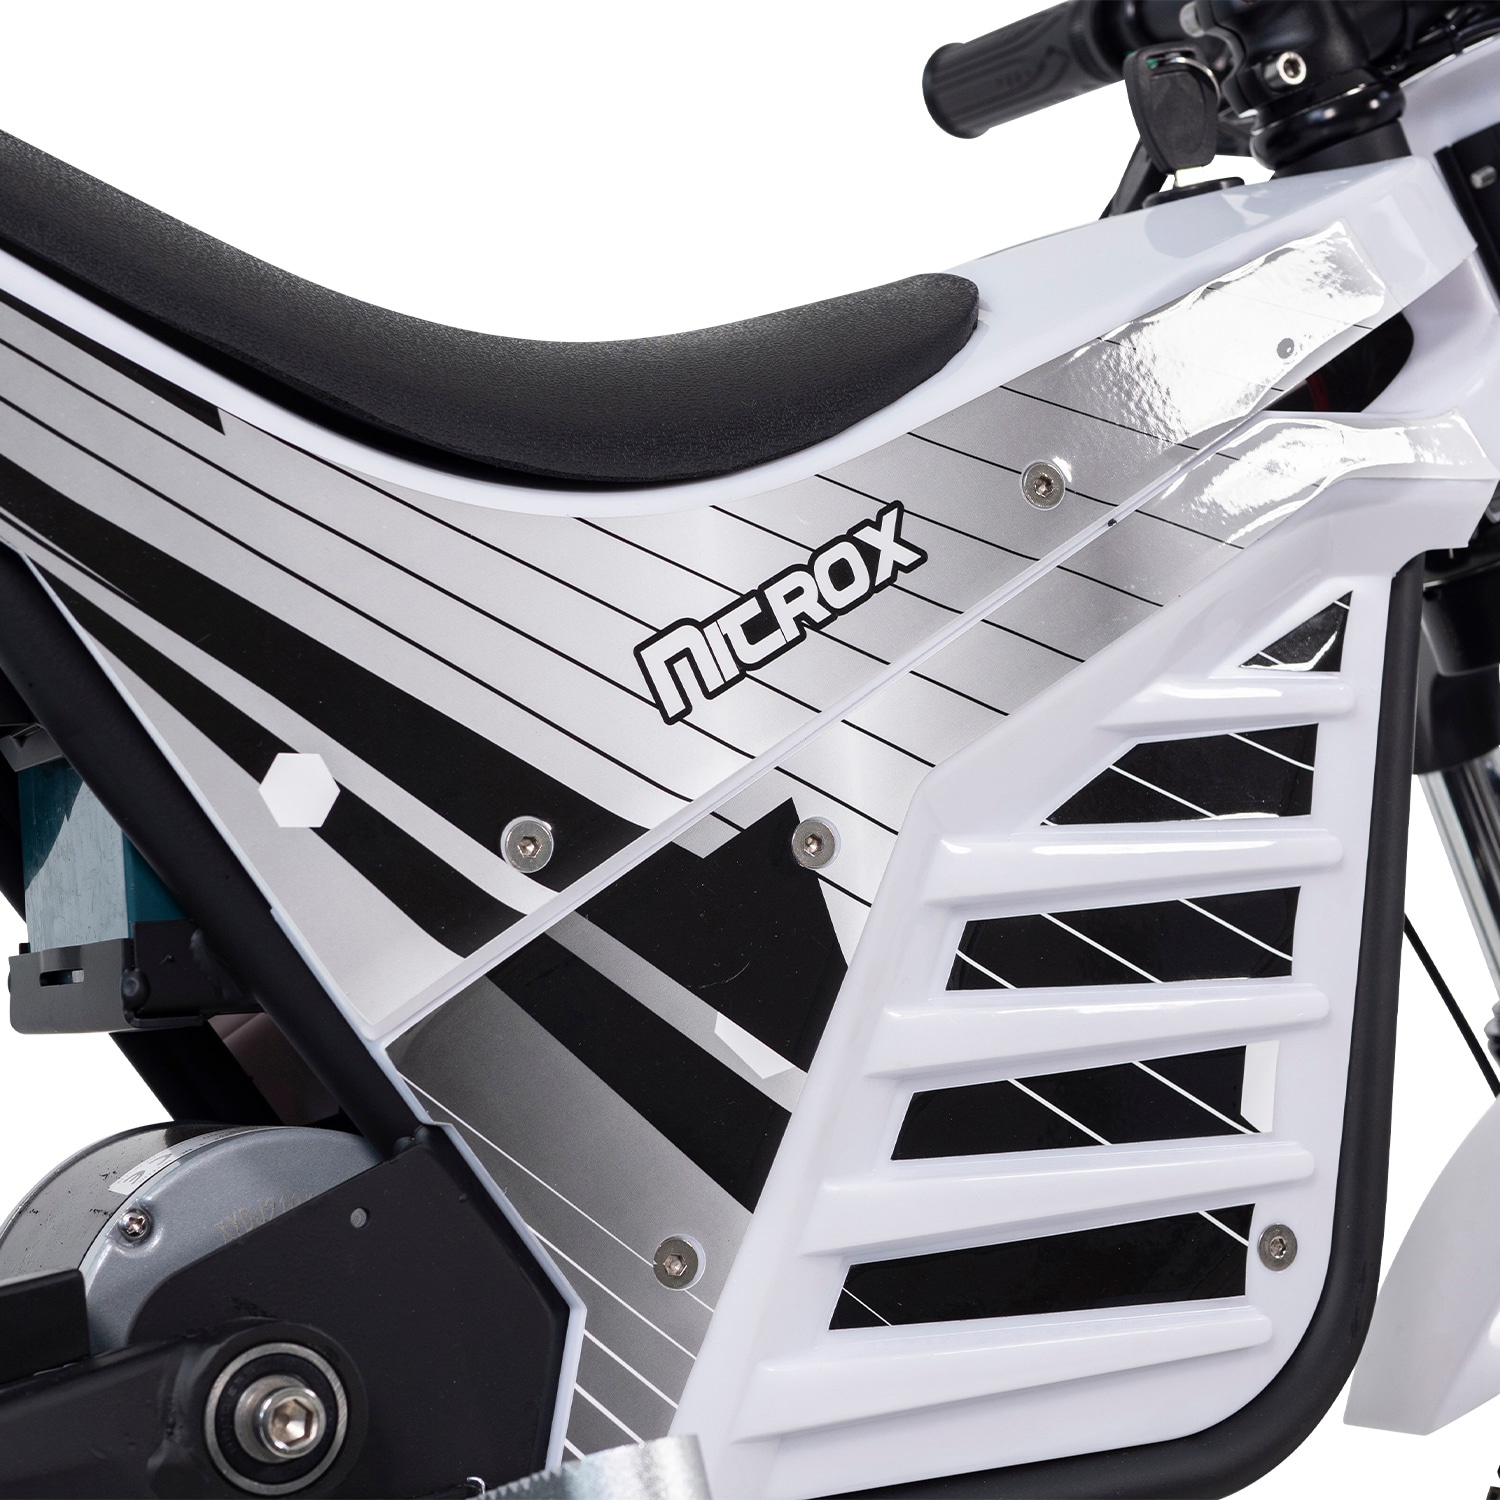 El-Cross Dirtbike NITROX Trial 1000W